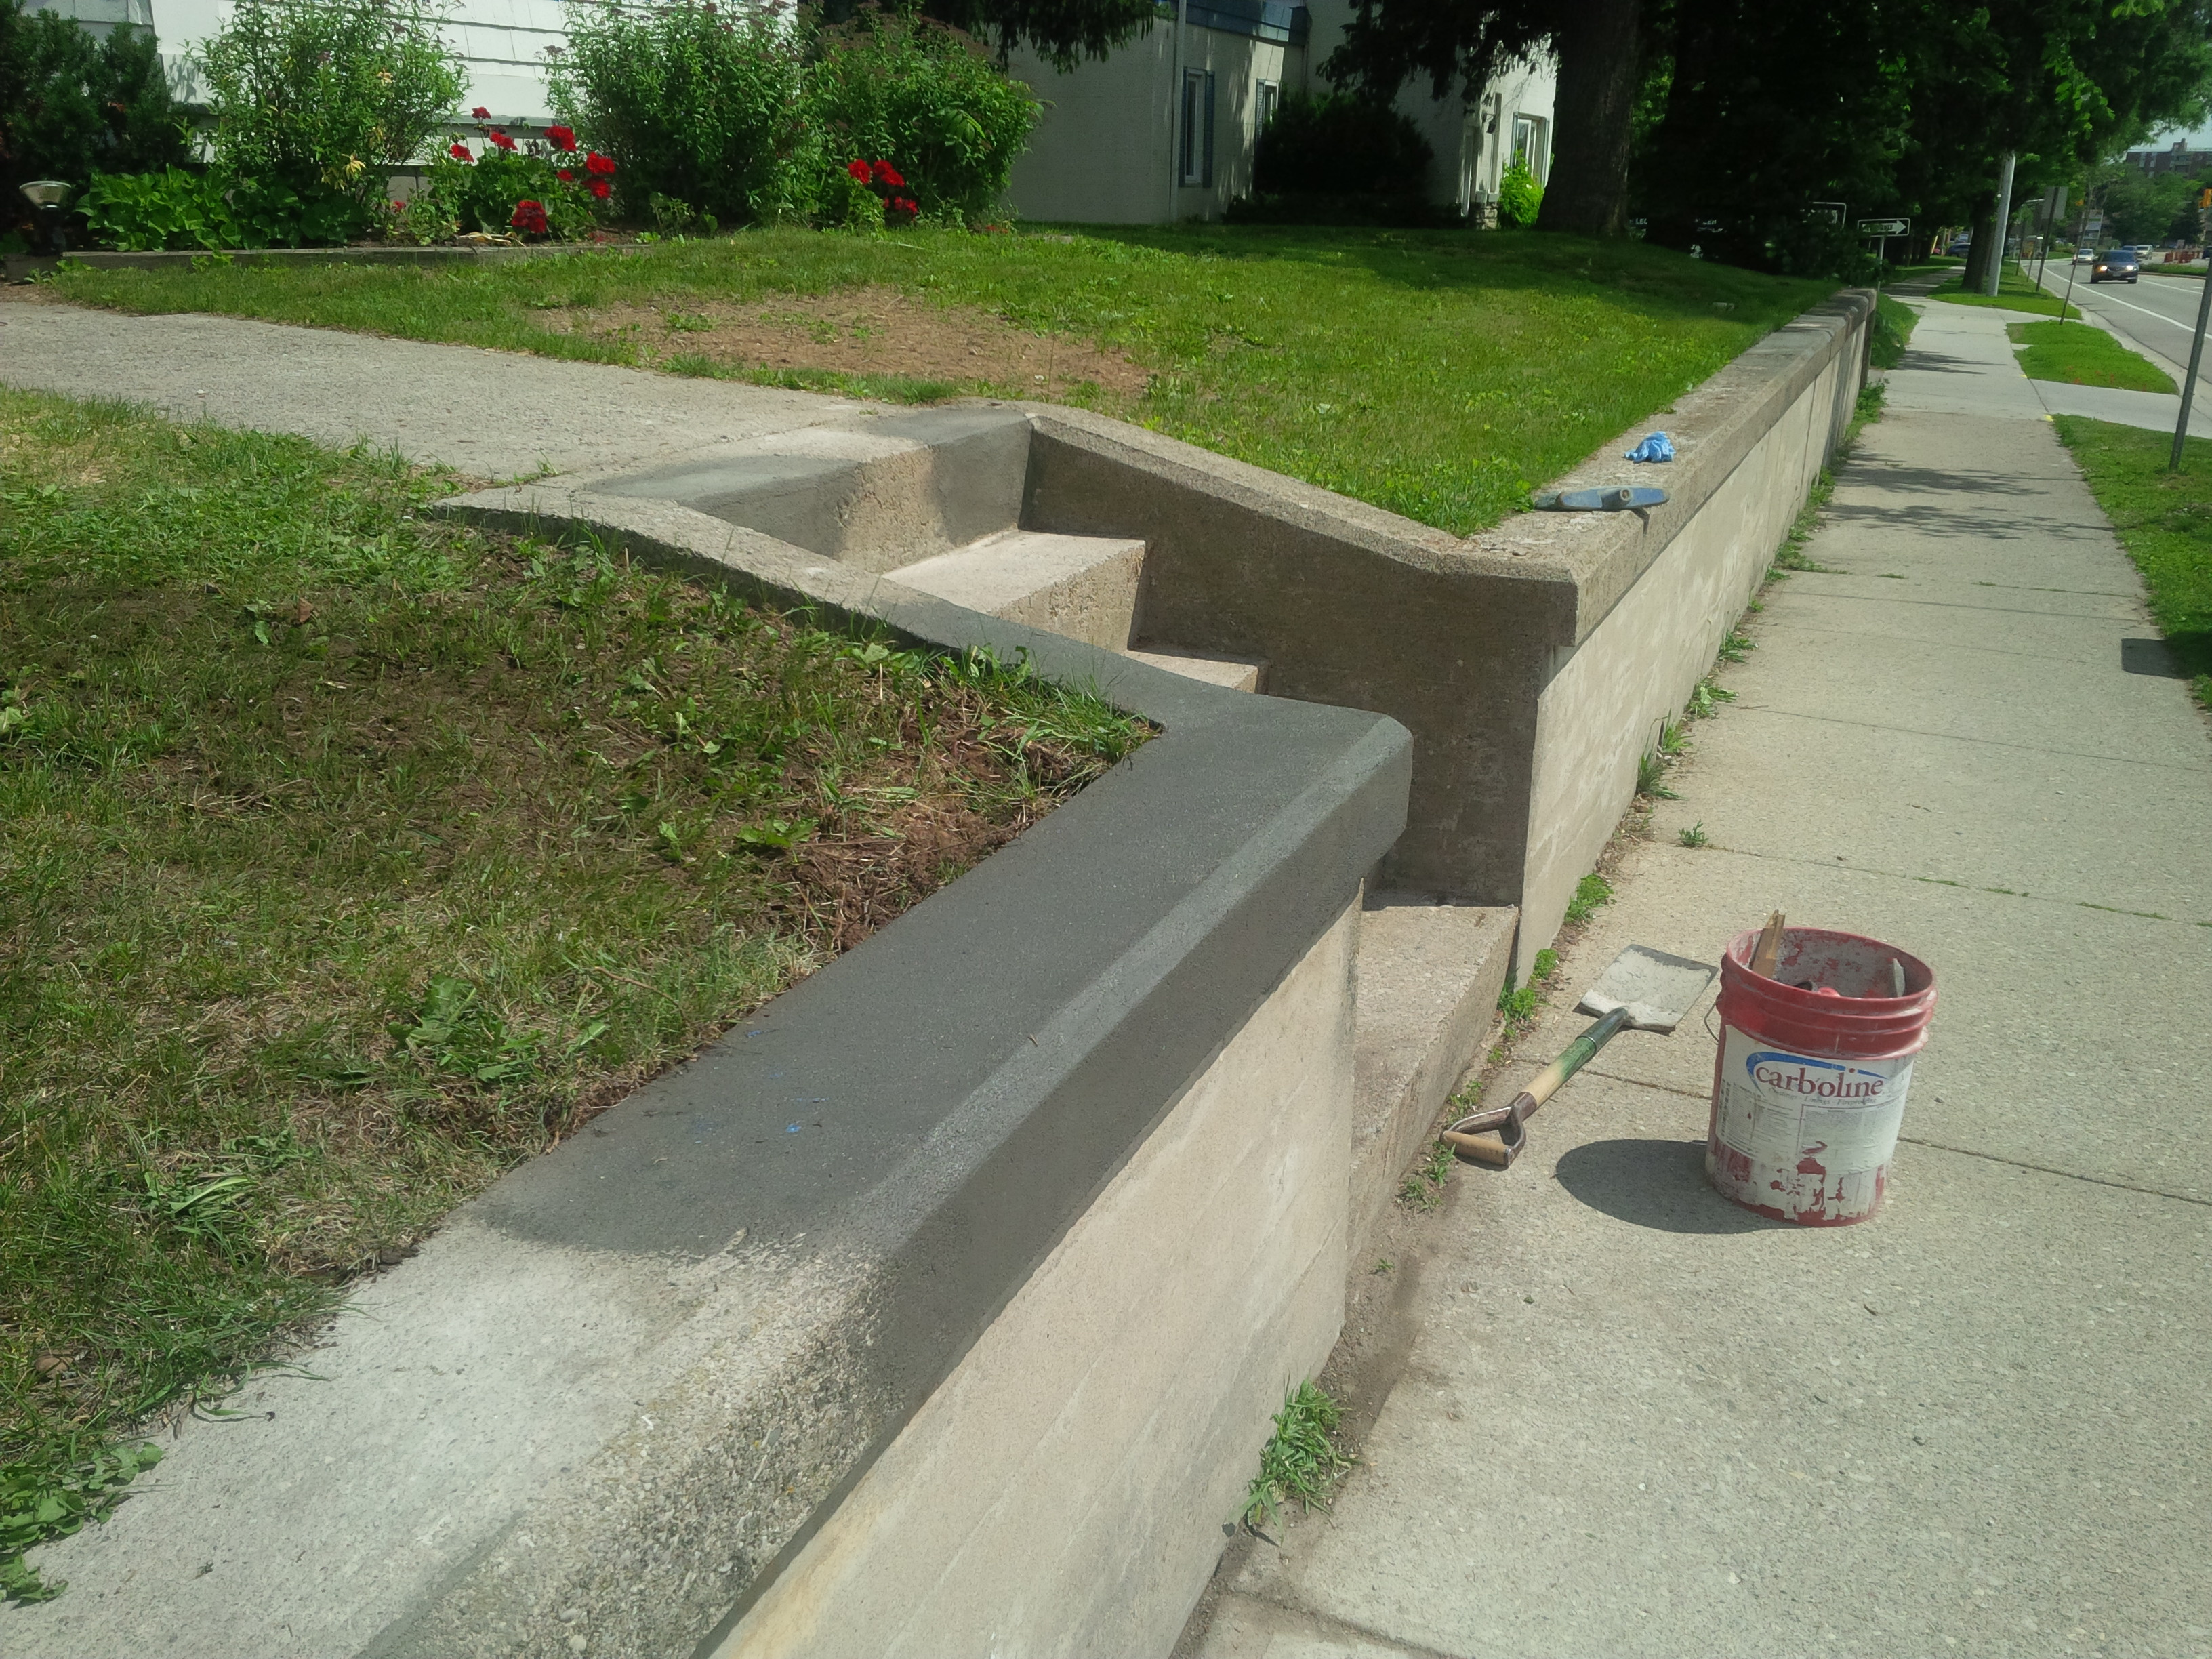 Curb and Wall Repairs
